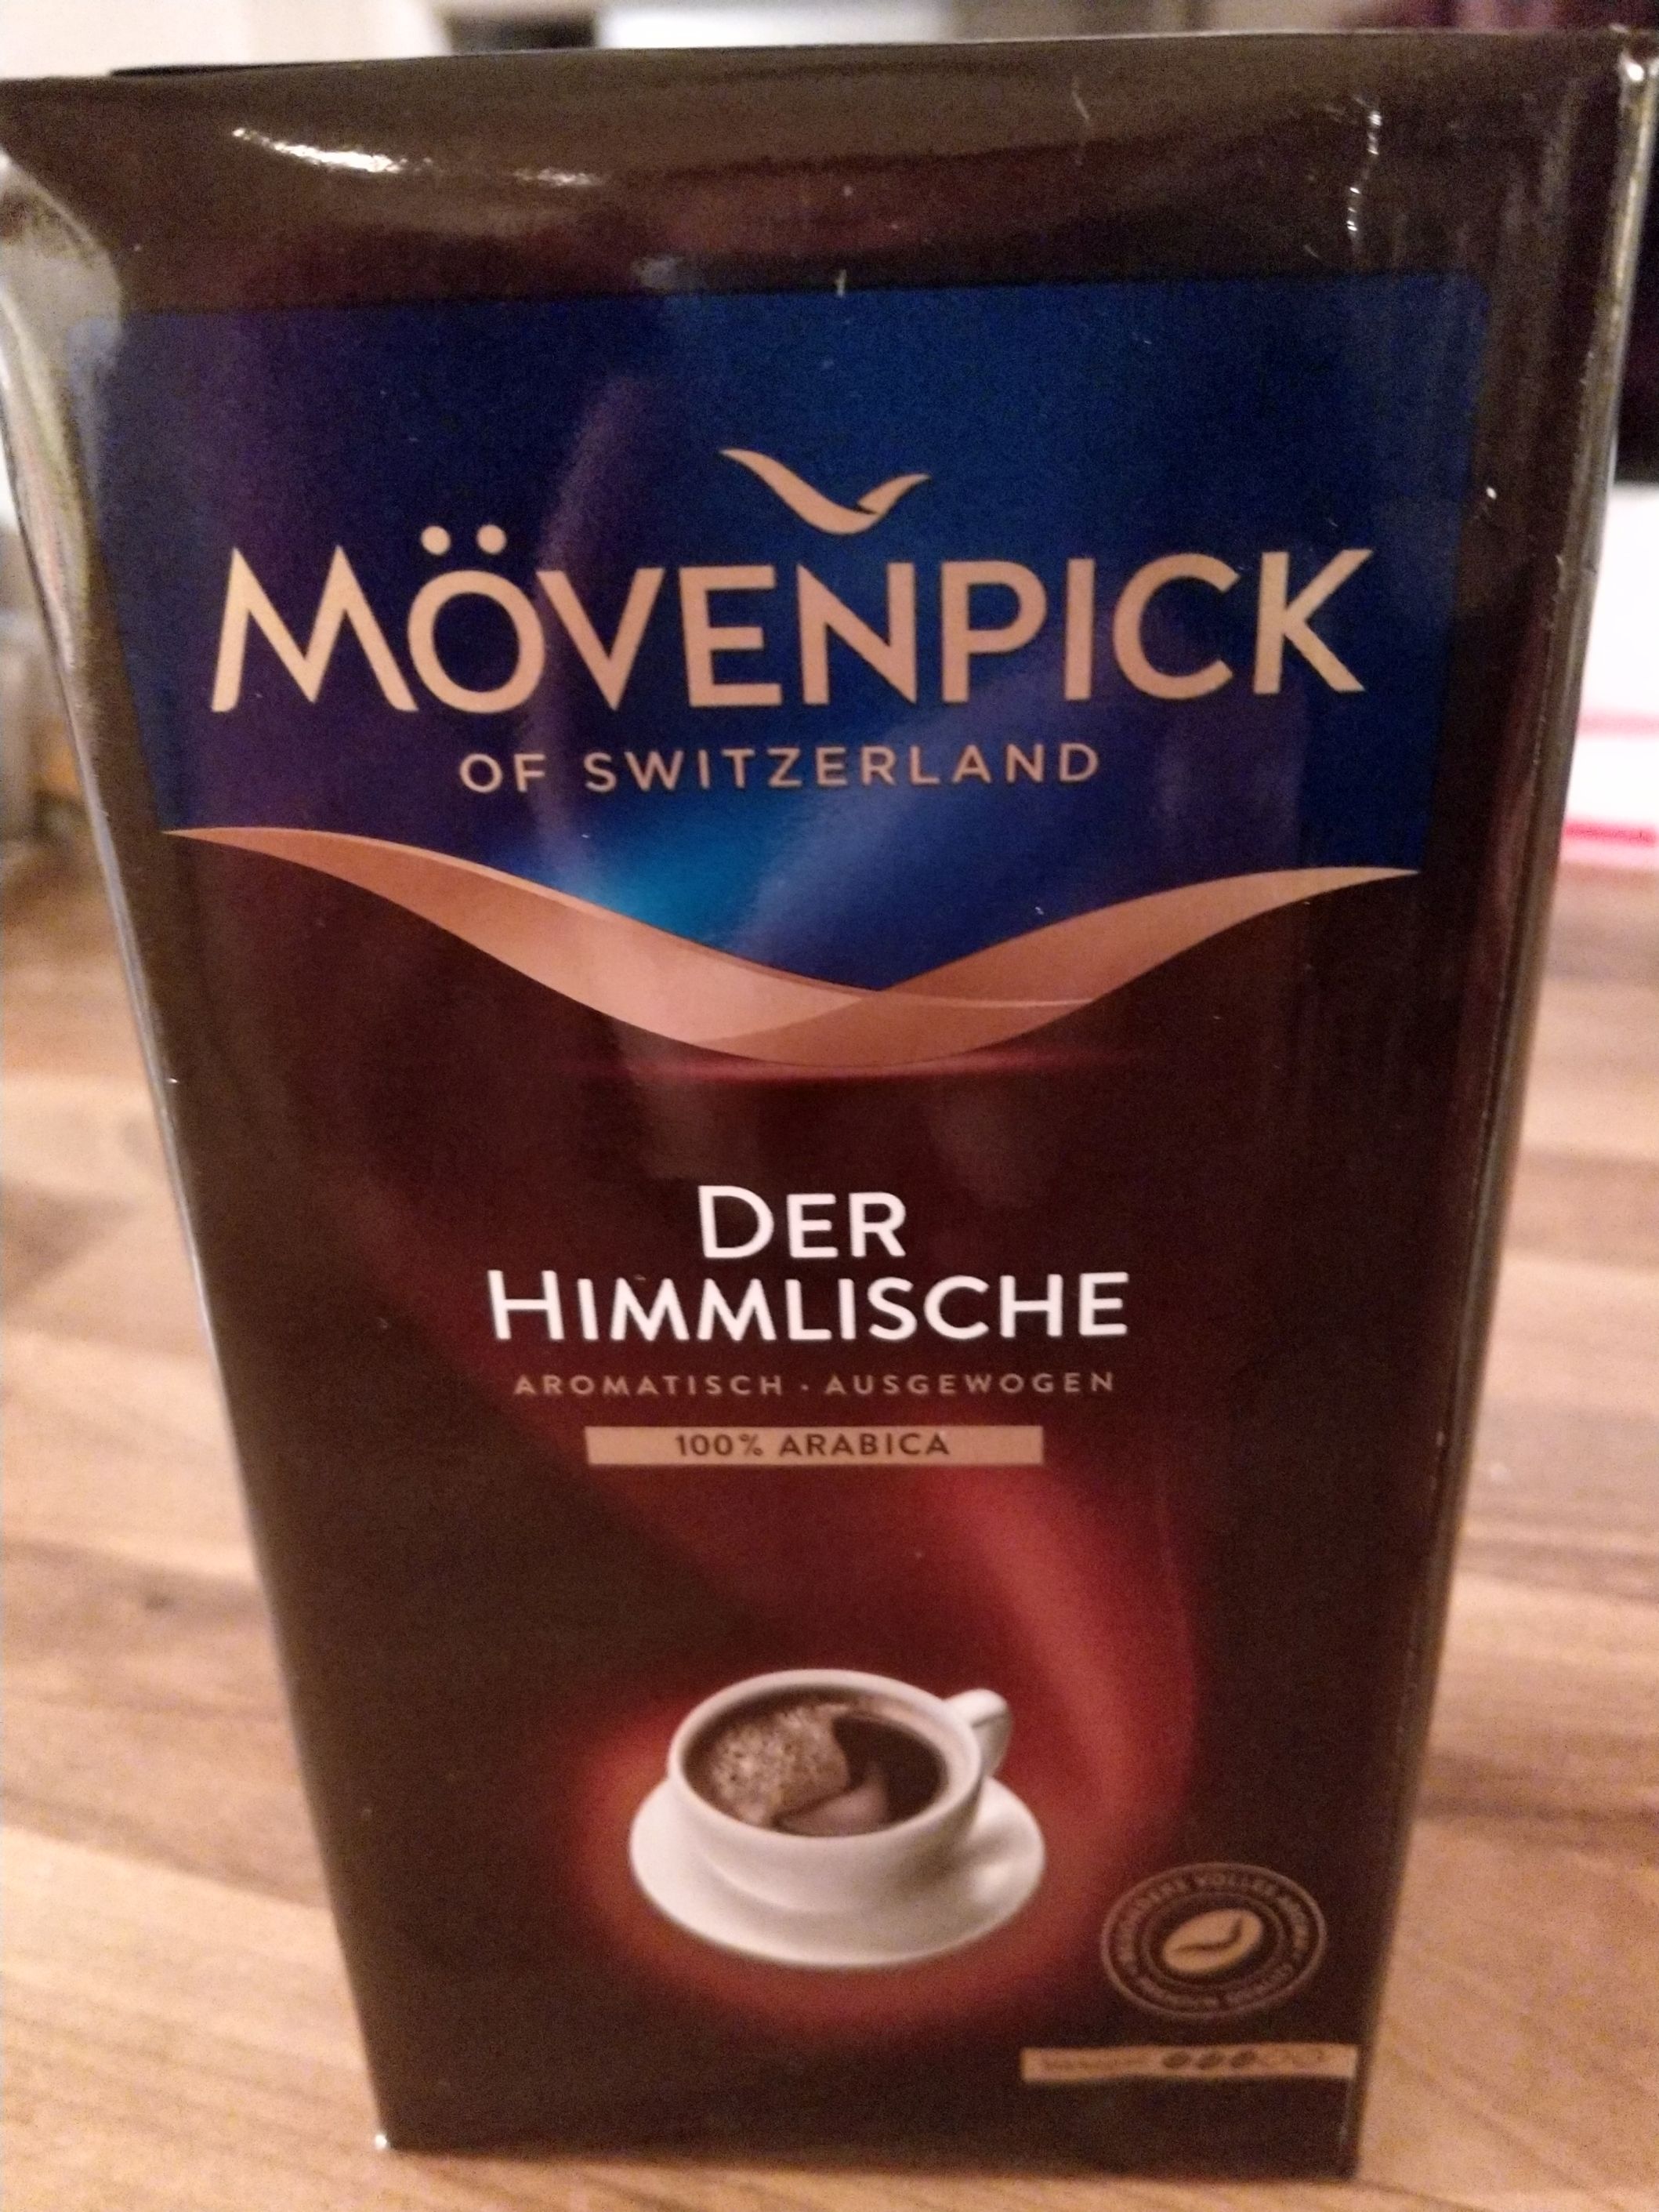 Produkttest: Der Himmlische Filterkaffee von Mövenpick - Maantoso ...